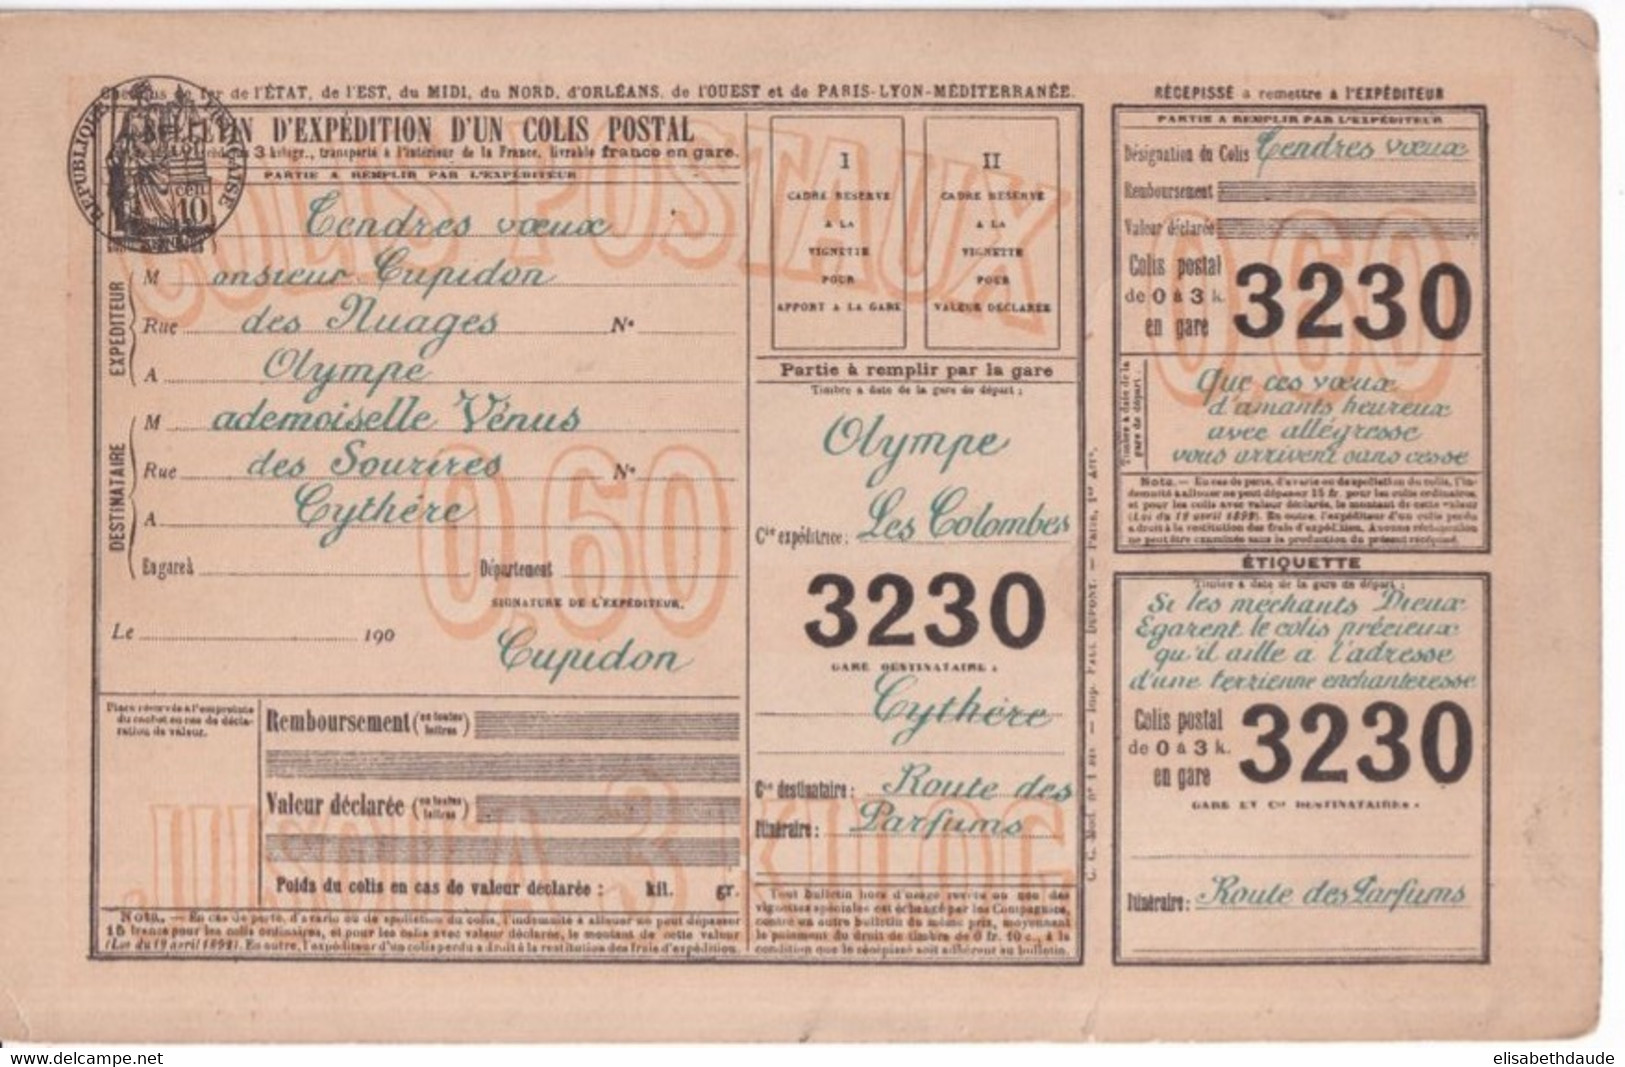 COLIS POSTAUX - ANNEES DEBUT 1900 - CARTE POSTALE FANTAISIE - Covers & Documents